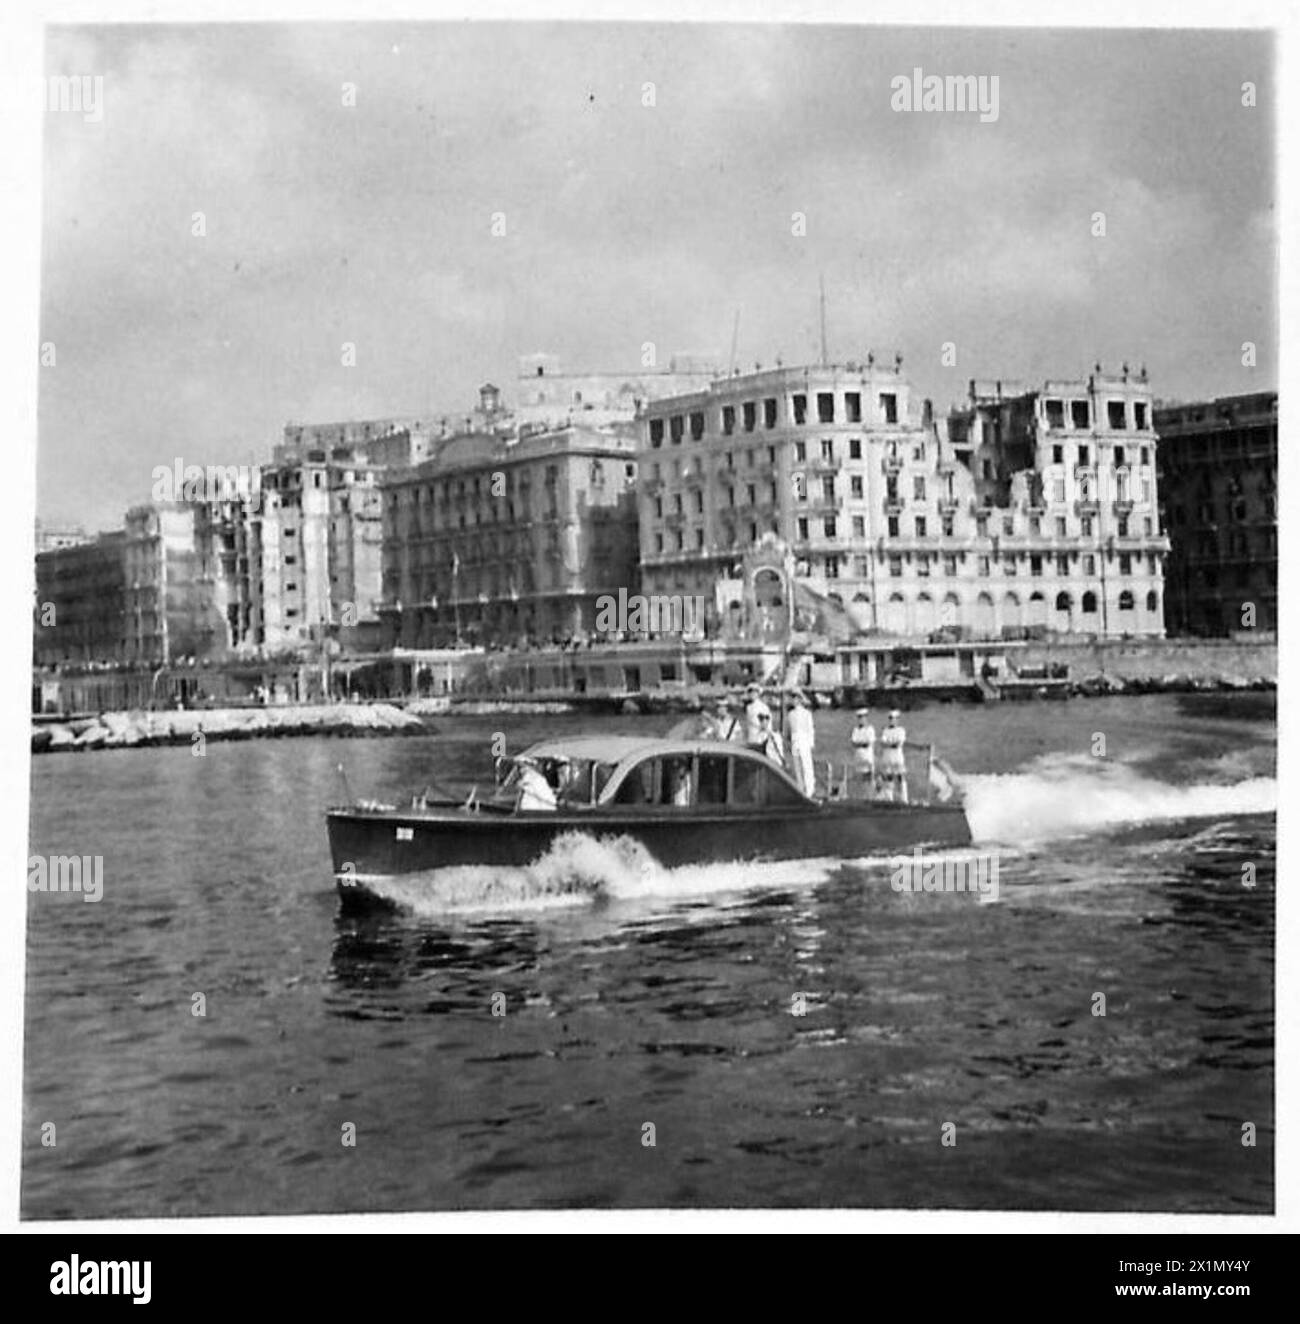 H.M. LE ROI EN ITALIE - sa Majesté dans la péniche royale, partit pour sa visite des unités navales à l'ancre dans la baie de Naples ; en arrière-plan sont quelques-uns des bâtiments marqués par la bombe sur le front de mer, l'armée britannique Banque D'Images